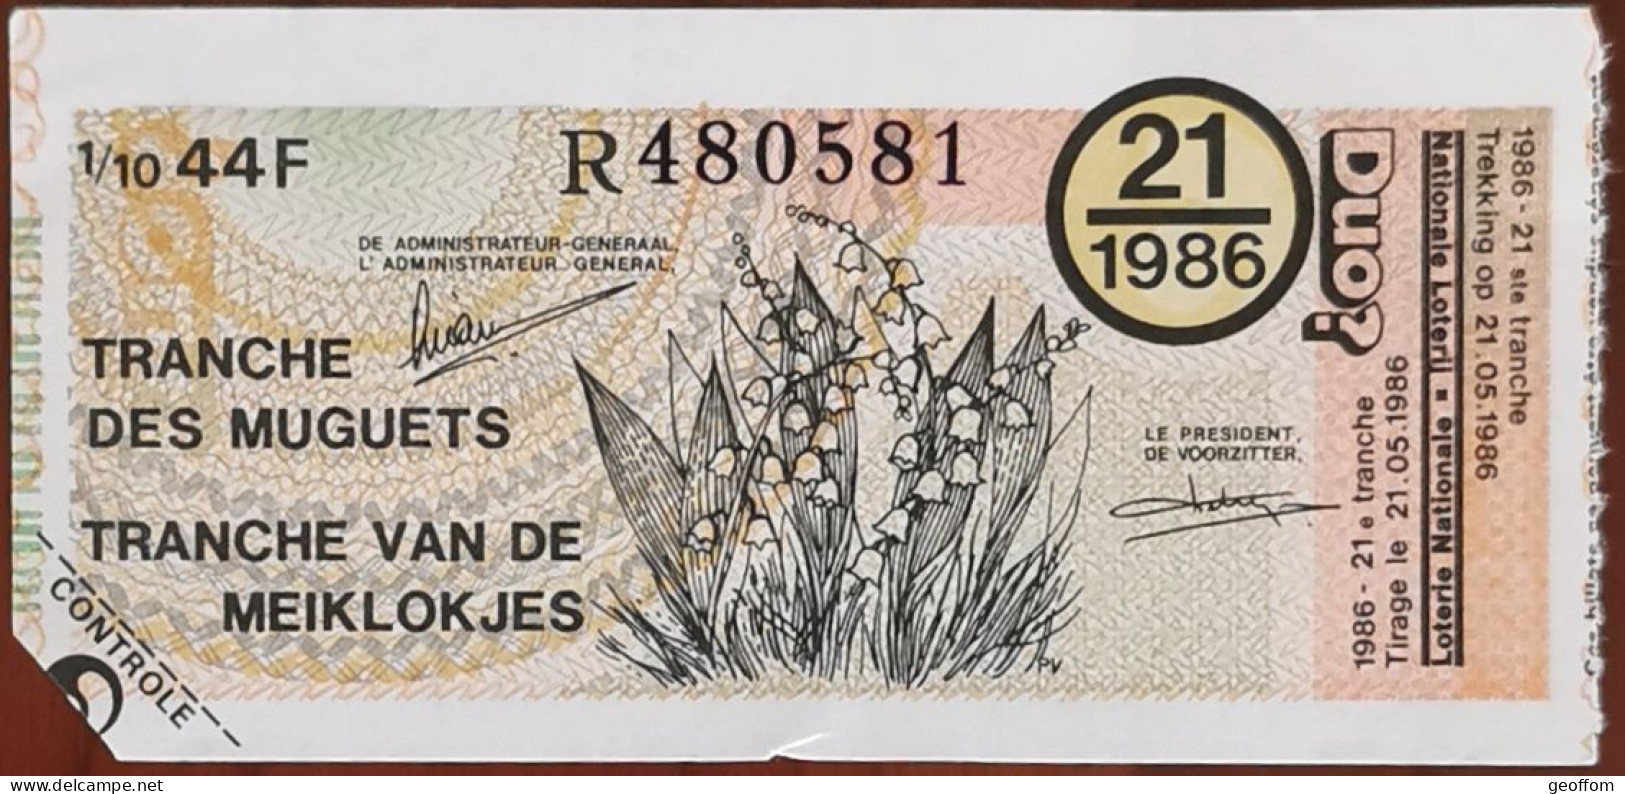 Billet De Loterie Nationale Belgique 1986 21e Tranche Des Muguets - 21-5-1986 - Billetes De Lotería